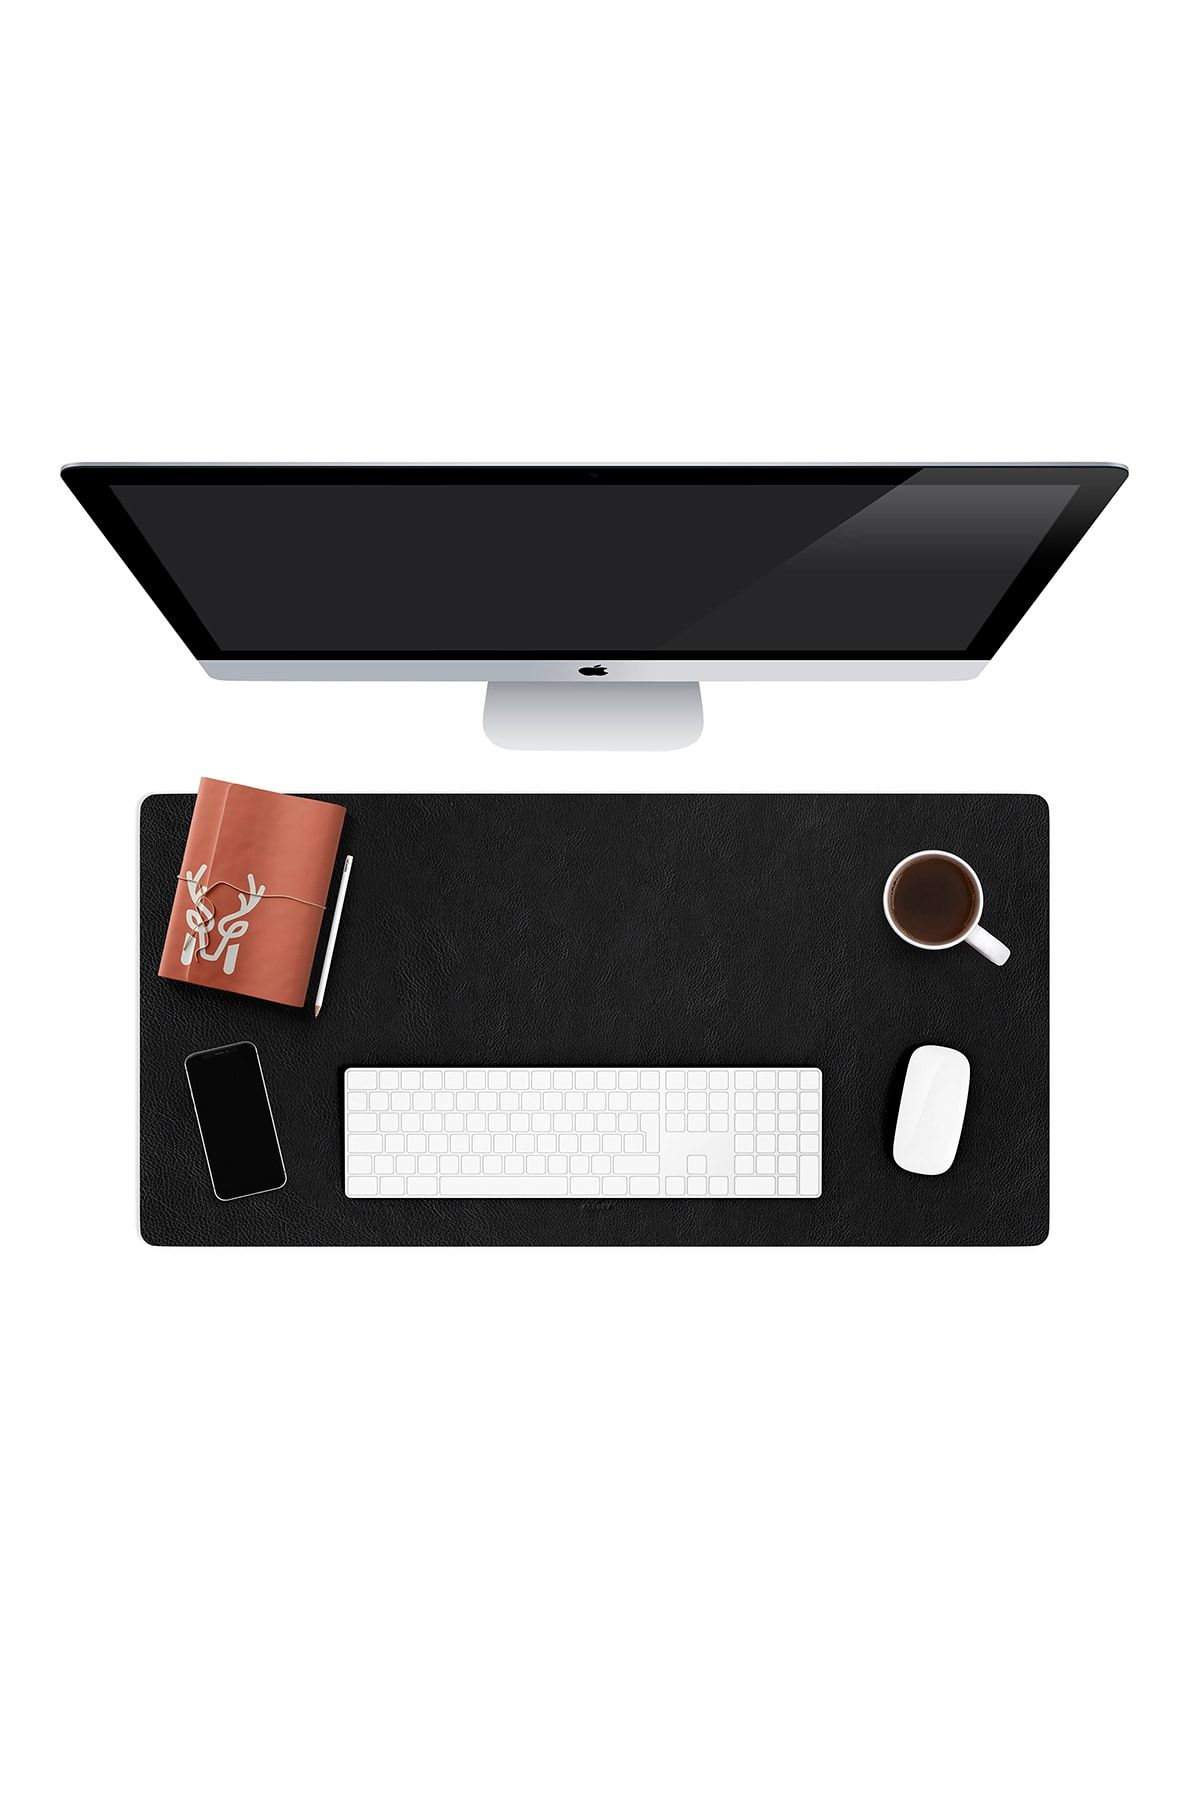 Modica Hobart - Hakiki Deri Siyah Masa Matı | Deri Oyuncu Mouse Pad | Yazı Masası Altlığı 75x35 Cm